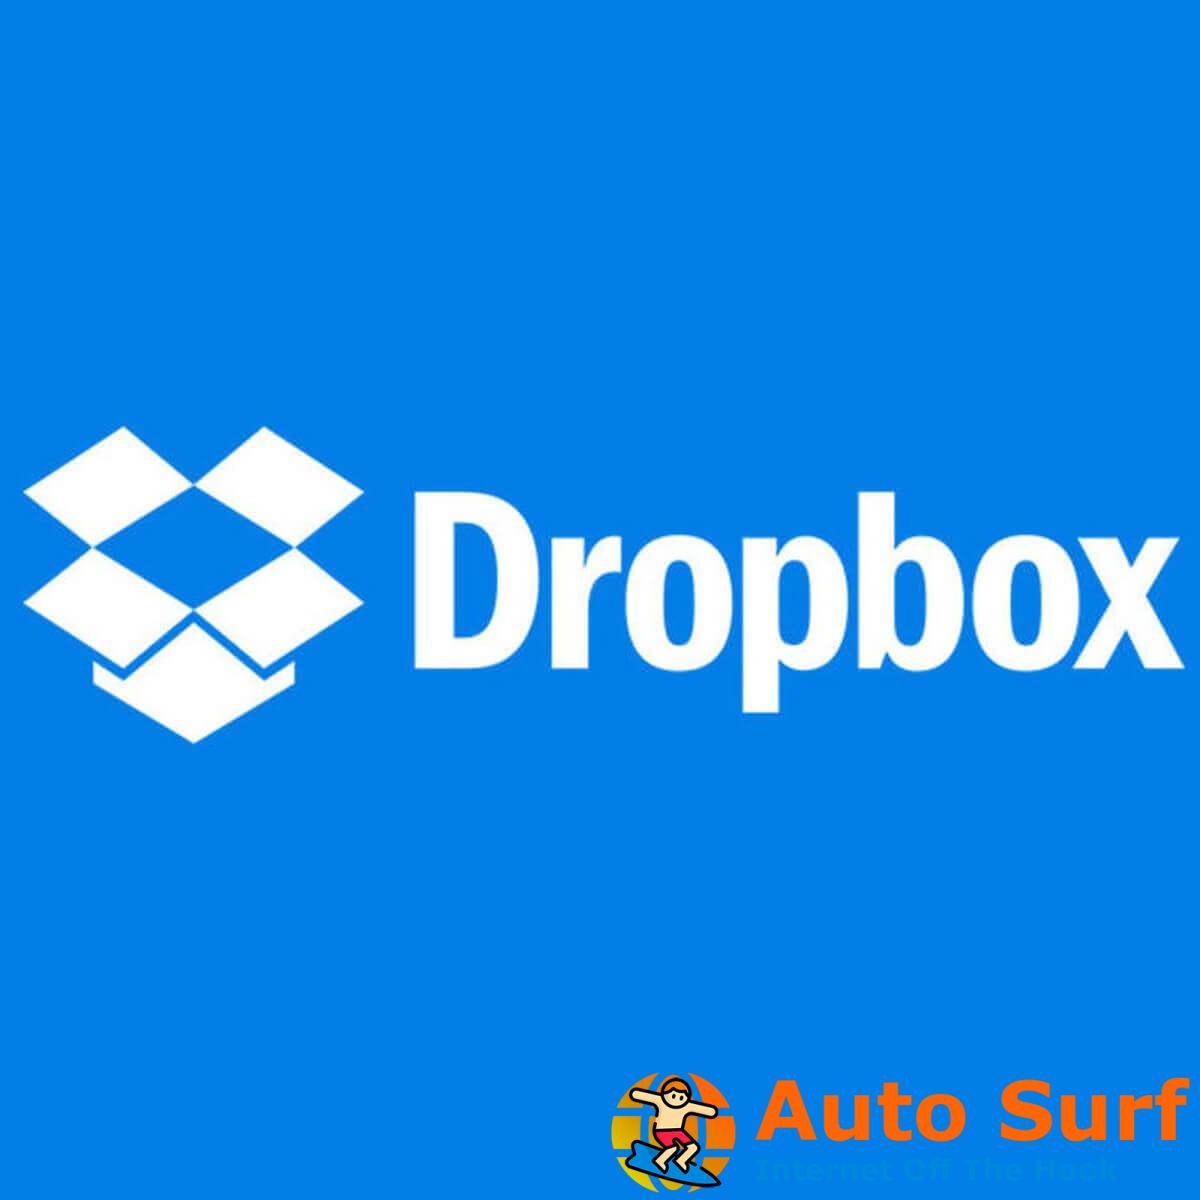 REVISIÓN: Su computadora no es compatible con el error de Dropbox